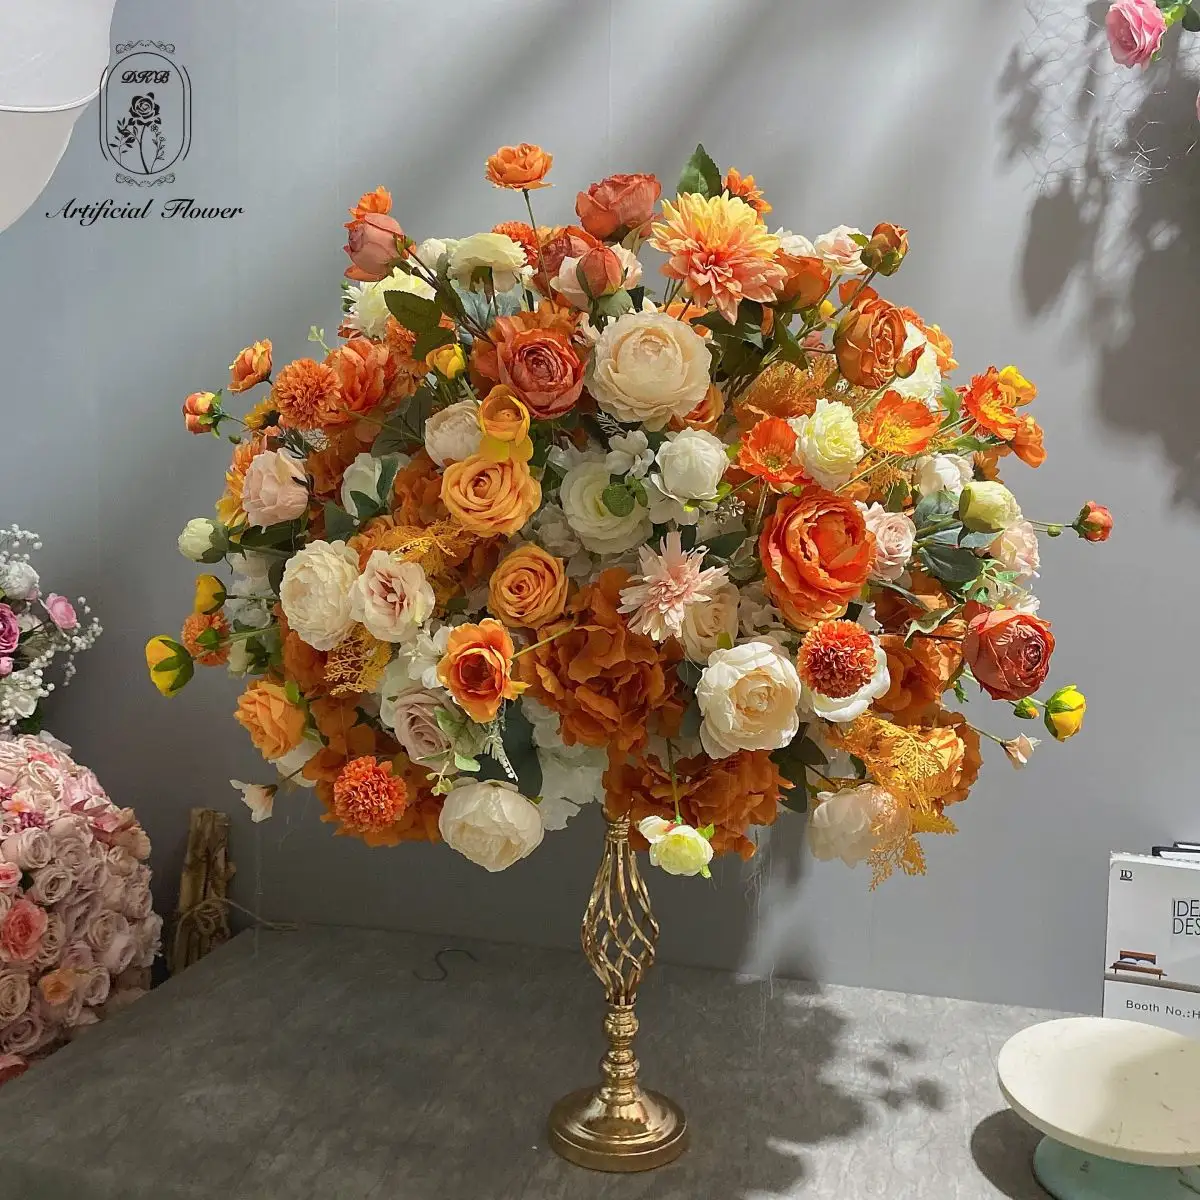 wedding centerpiece table centerpiece flower ball wedding supplies artificial floral ball